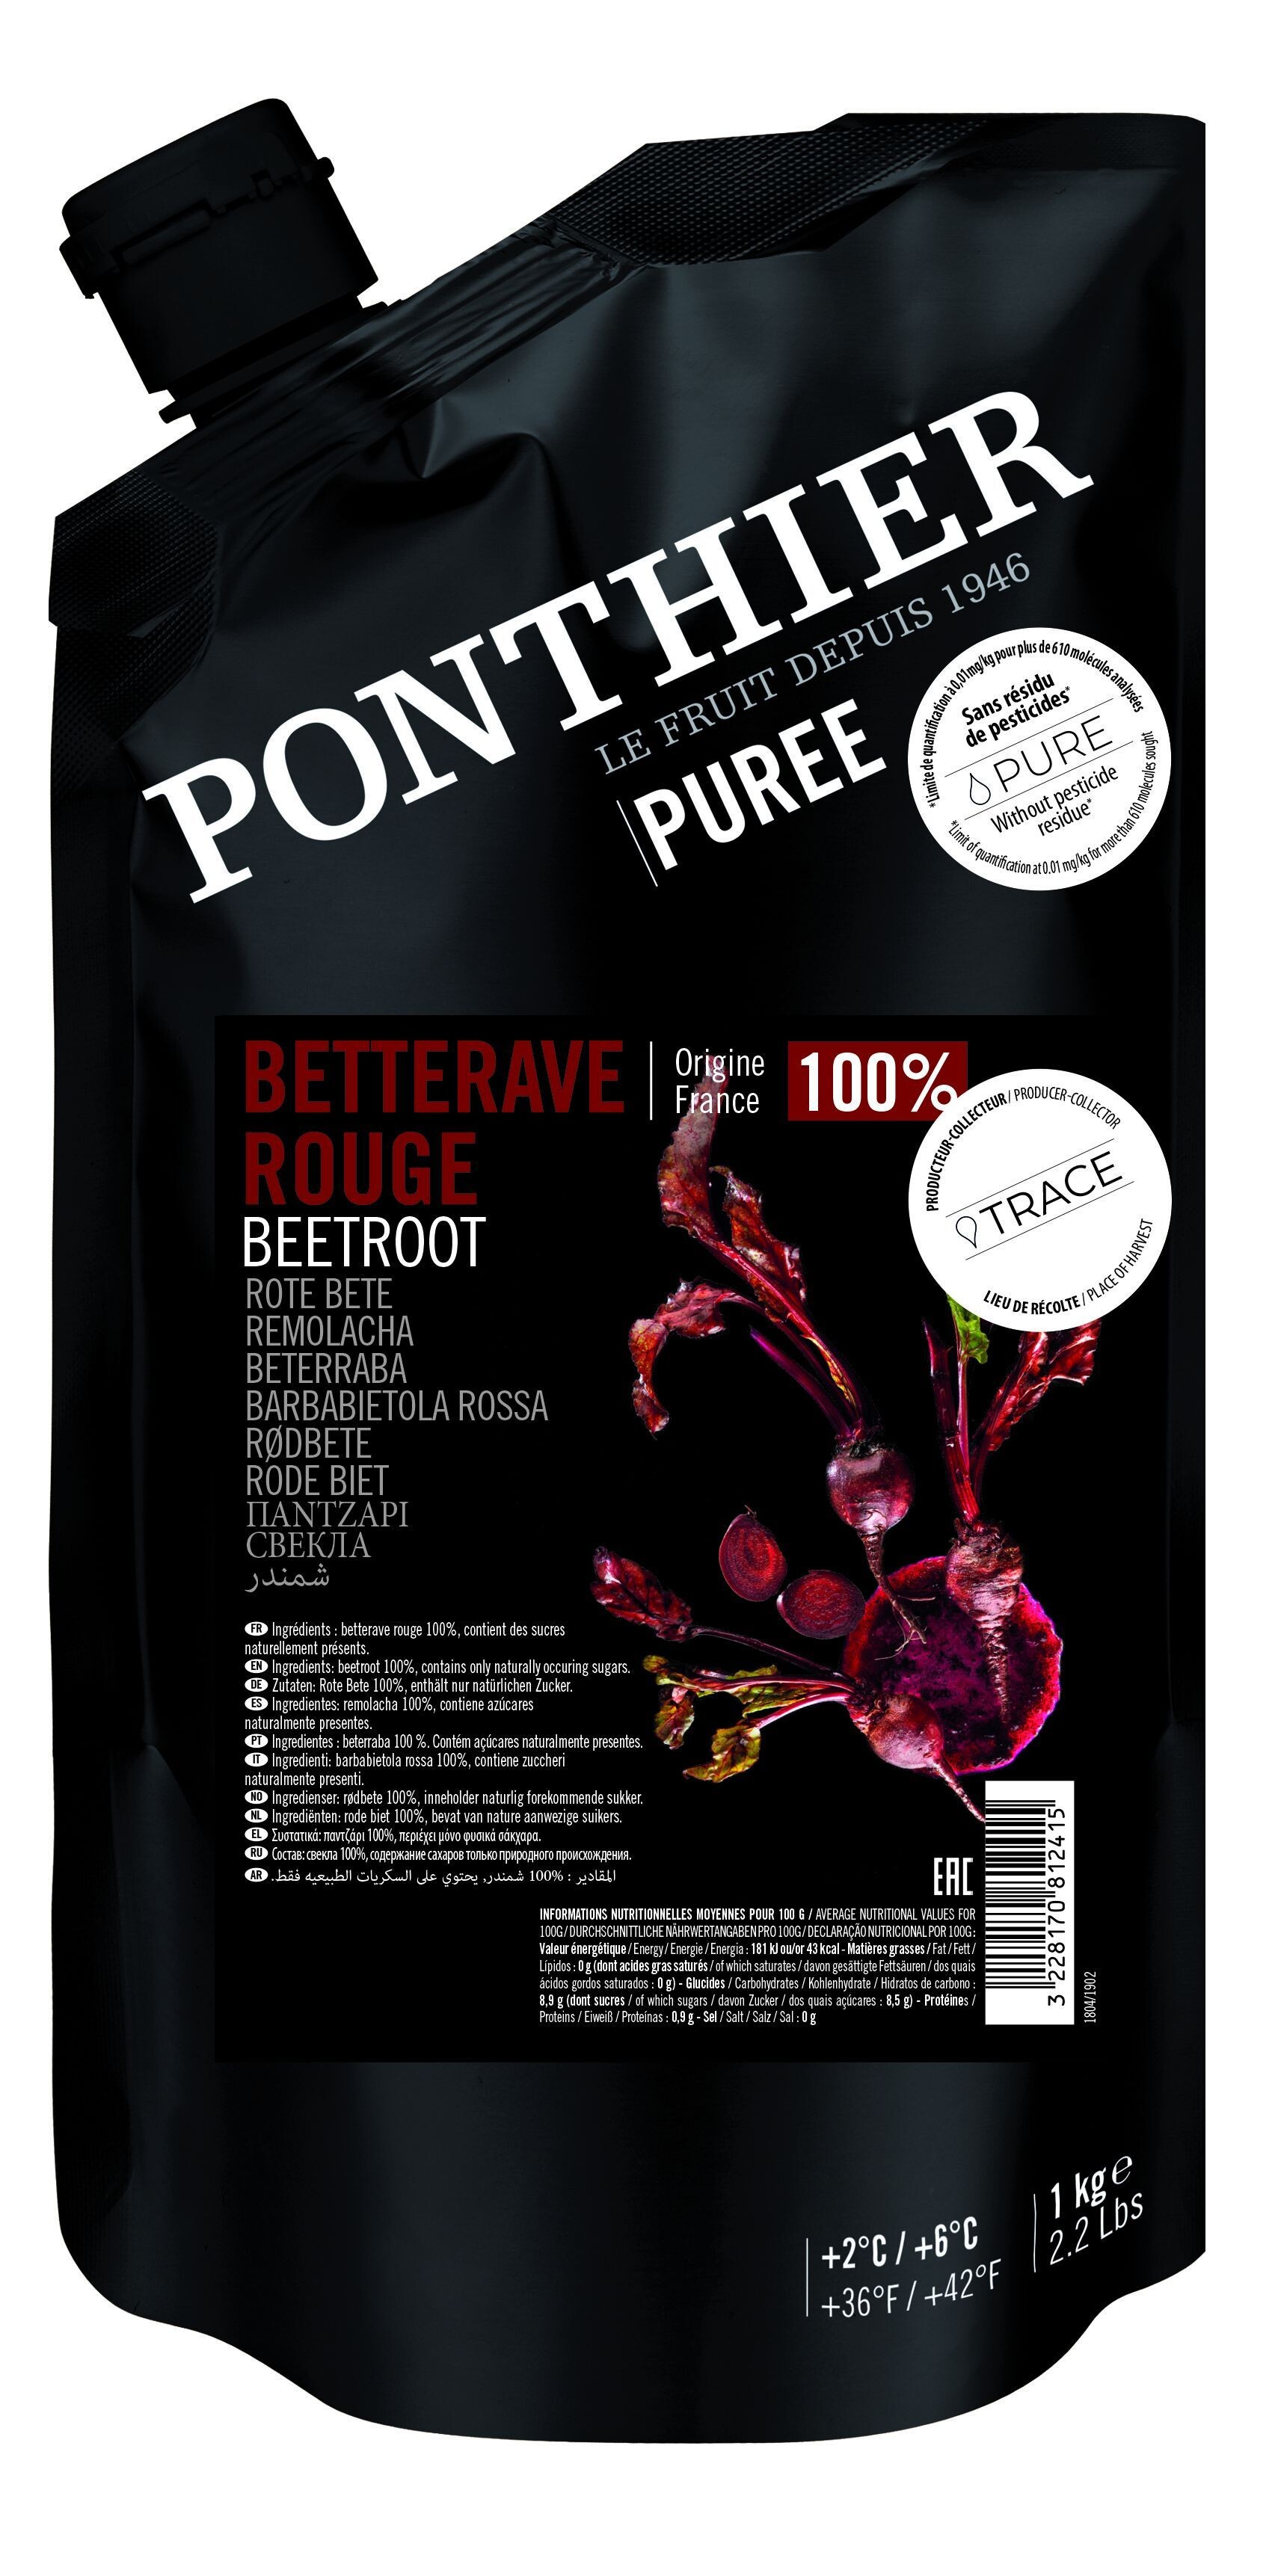 Ponthier Vegetable Puree Beetroot 1kg